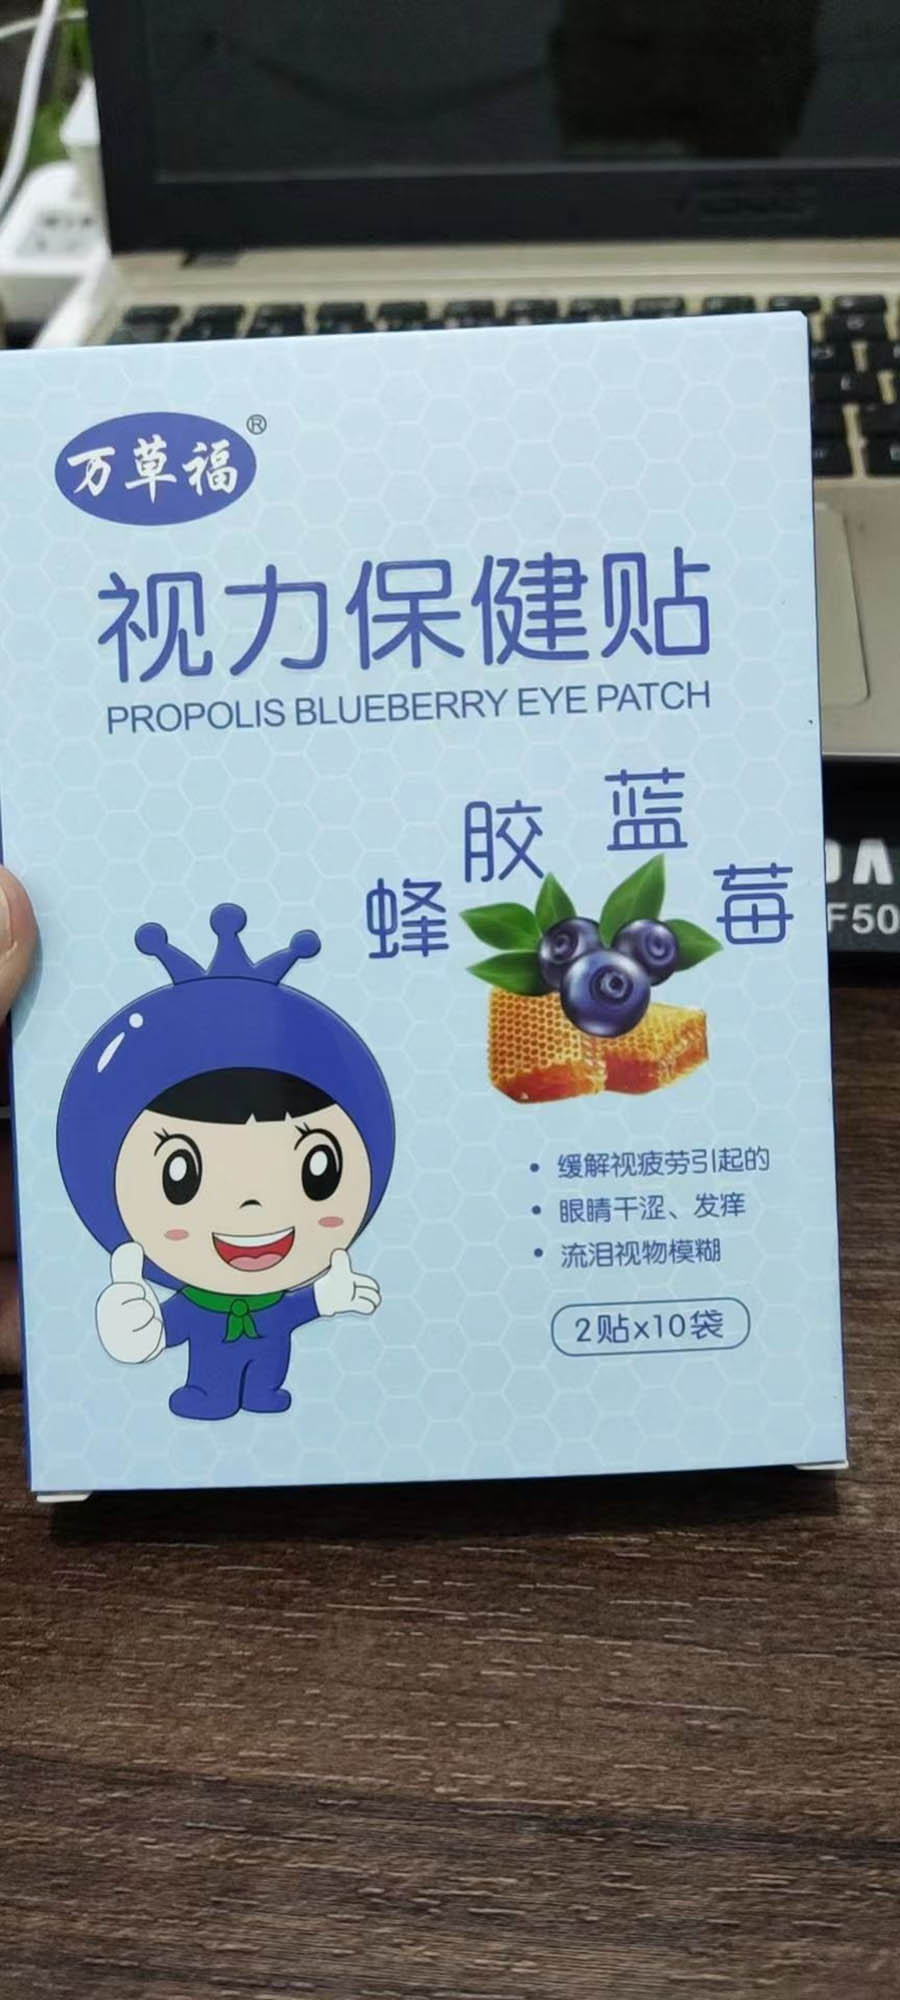 蜂胶蓝莓视力保健贴